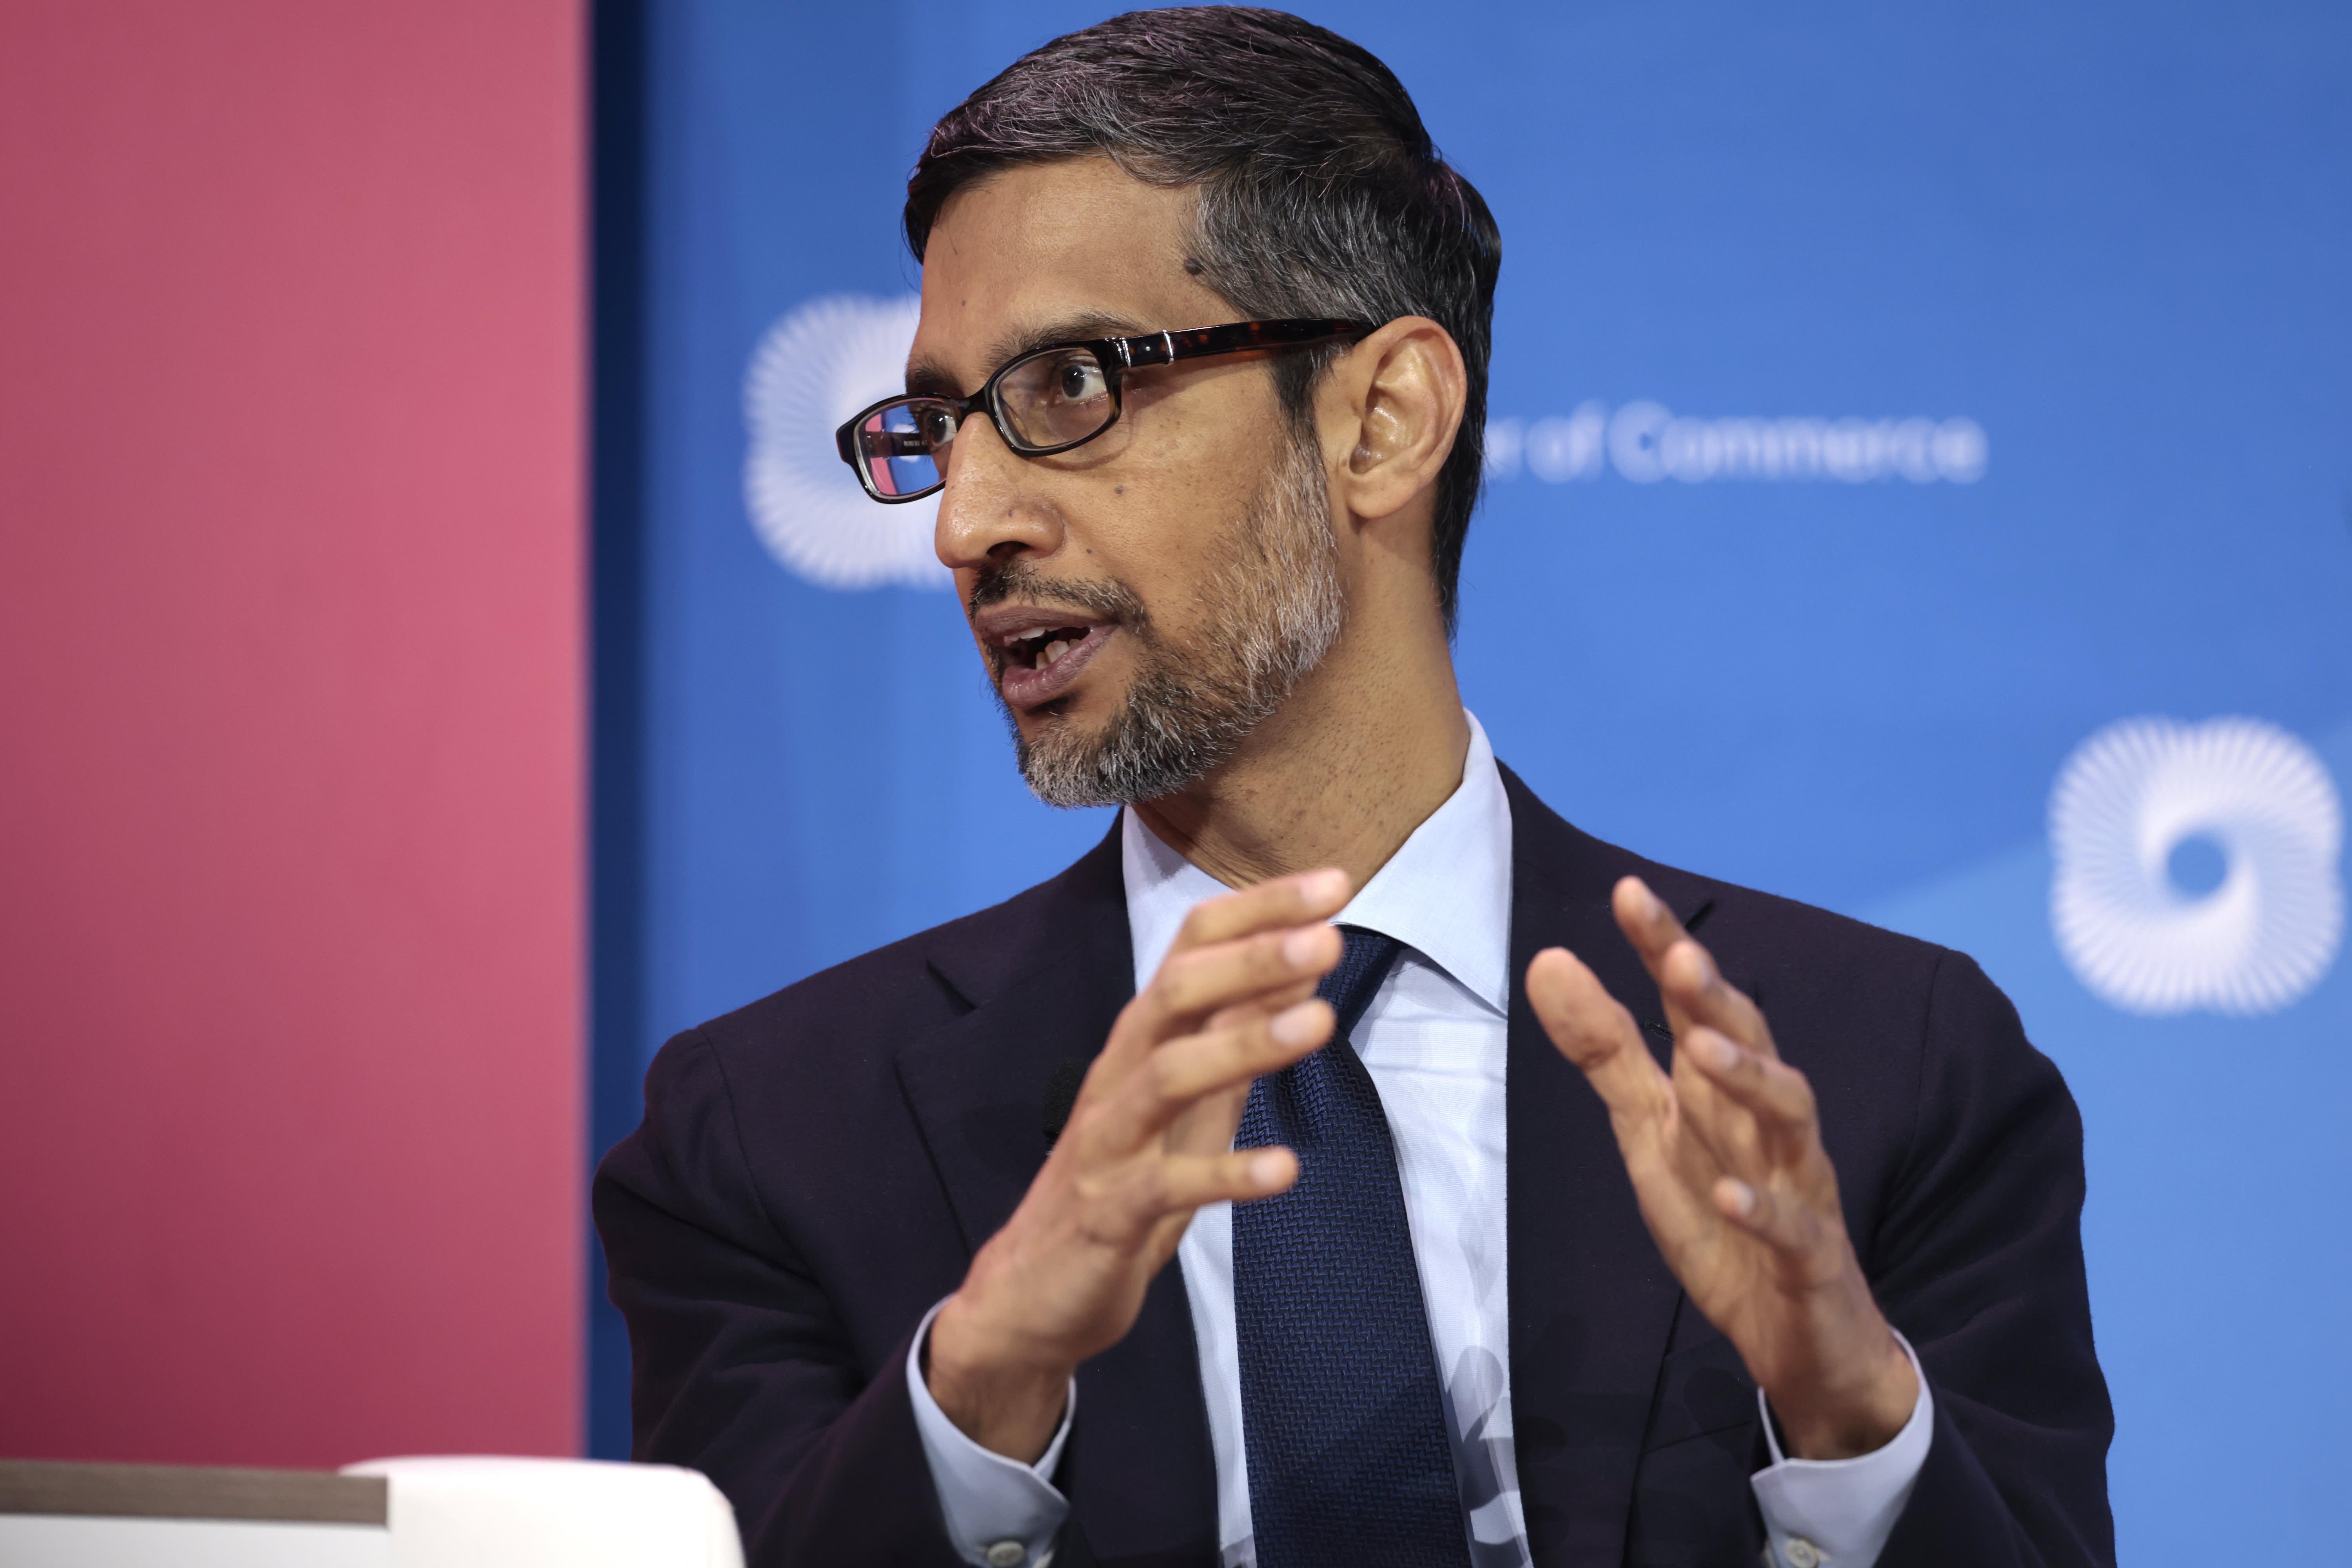 El CEO de Google, Sundar Pichai, advierte a la sociedad que se prepare para el impacto de la aceleración de la inteligencia artificial